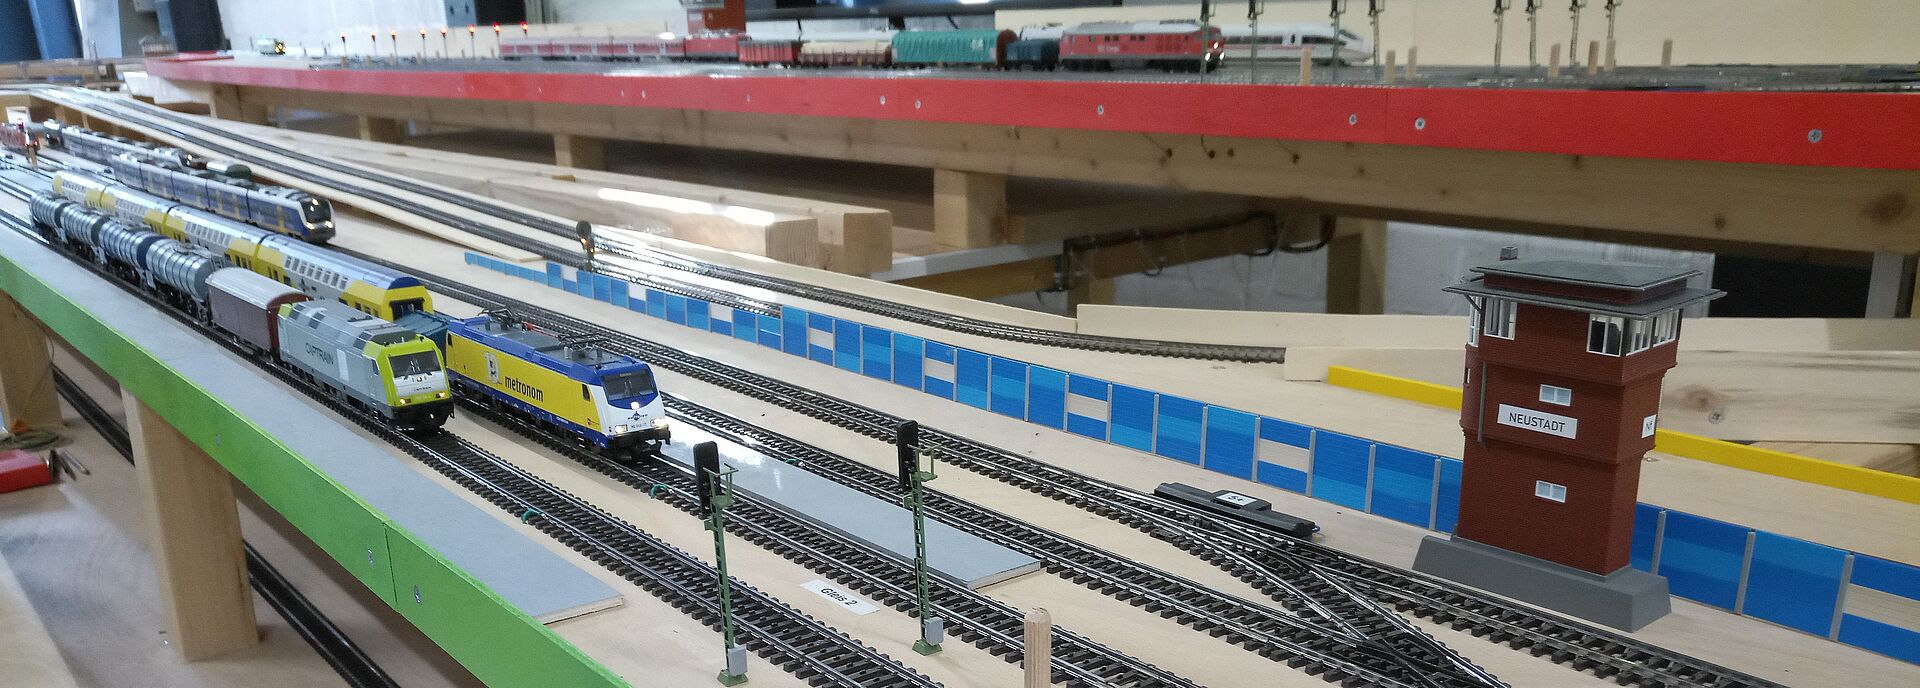 Modellzüge am Bahnhof Neustadt der ELA vom IVE